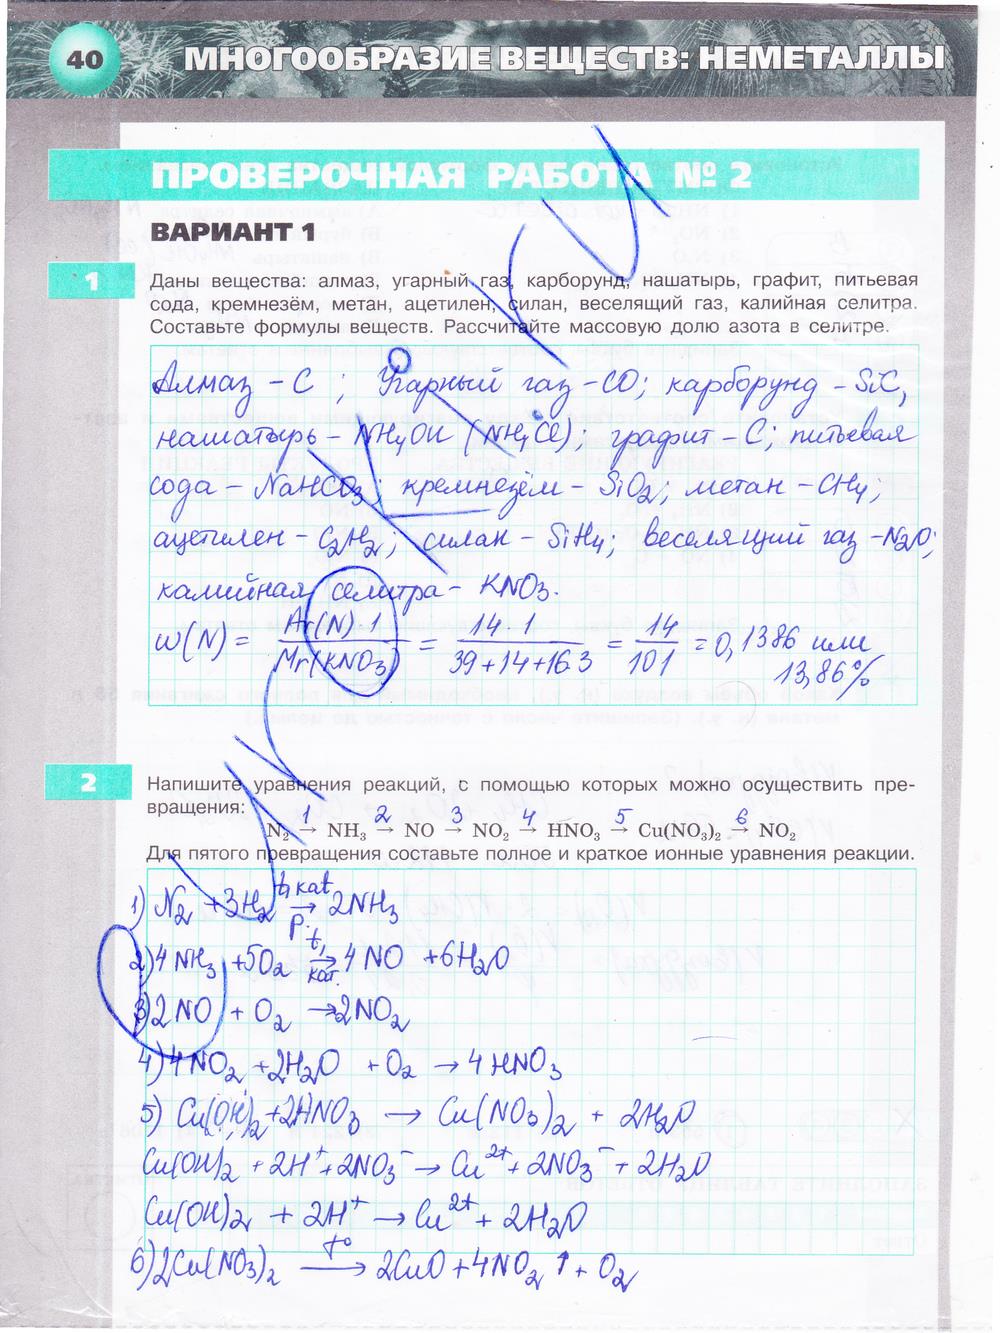 гдз 9 класс тетрадь-экзаменатор страница 40 химия Бобылева, Бирюлина